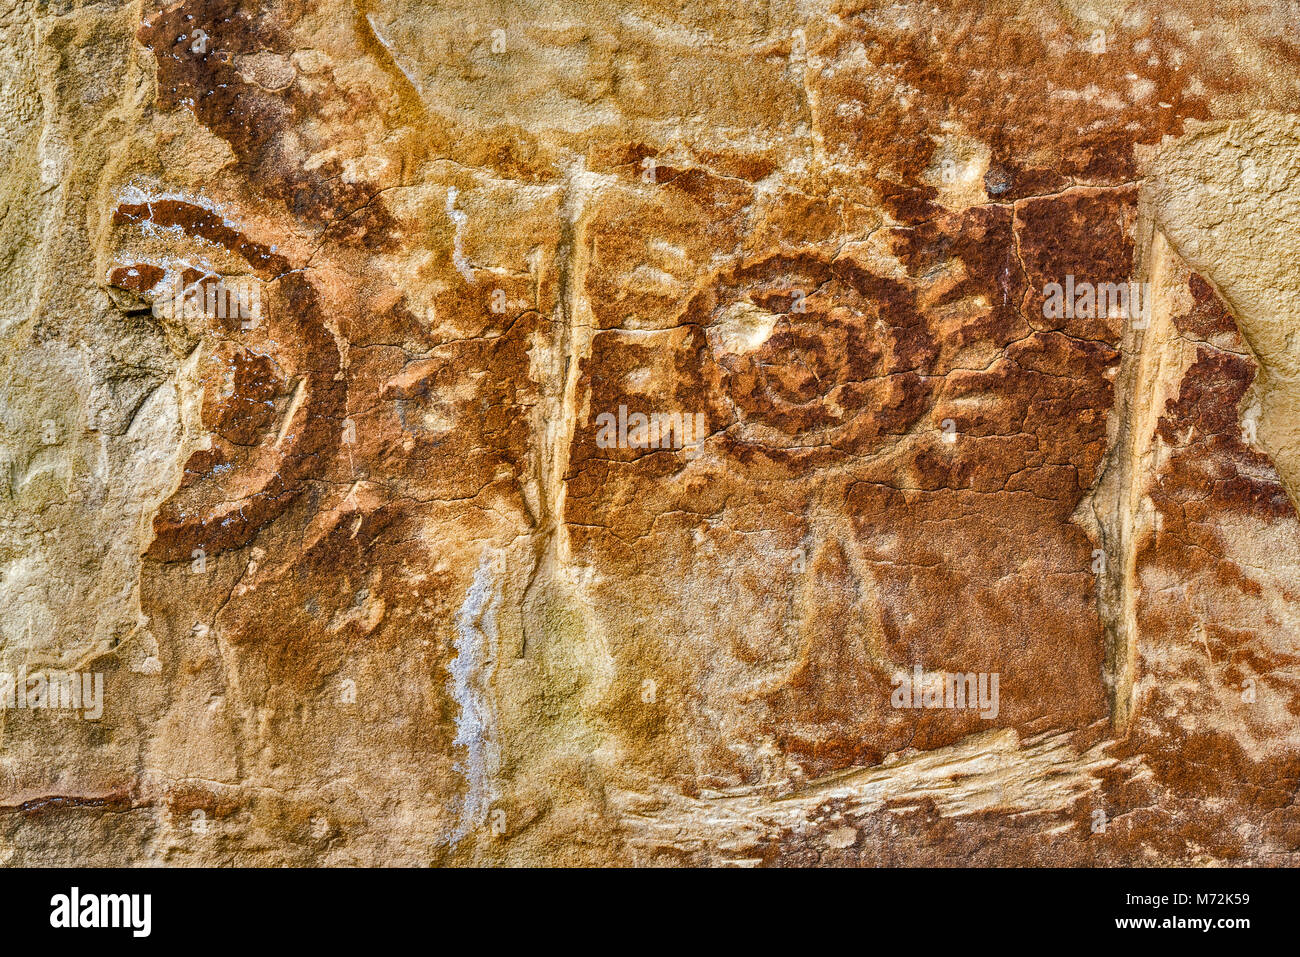 Shield Site rock art petroglyph, Dragon Road area, near Canyon Pintado and town of Rangely, Colorado, USA Stock Photo